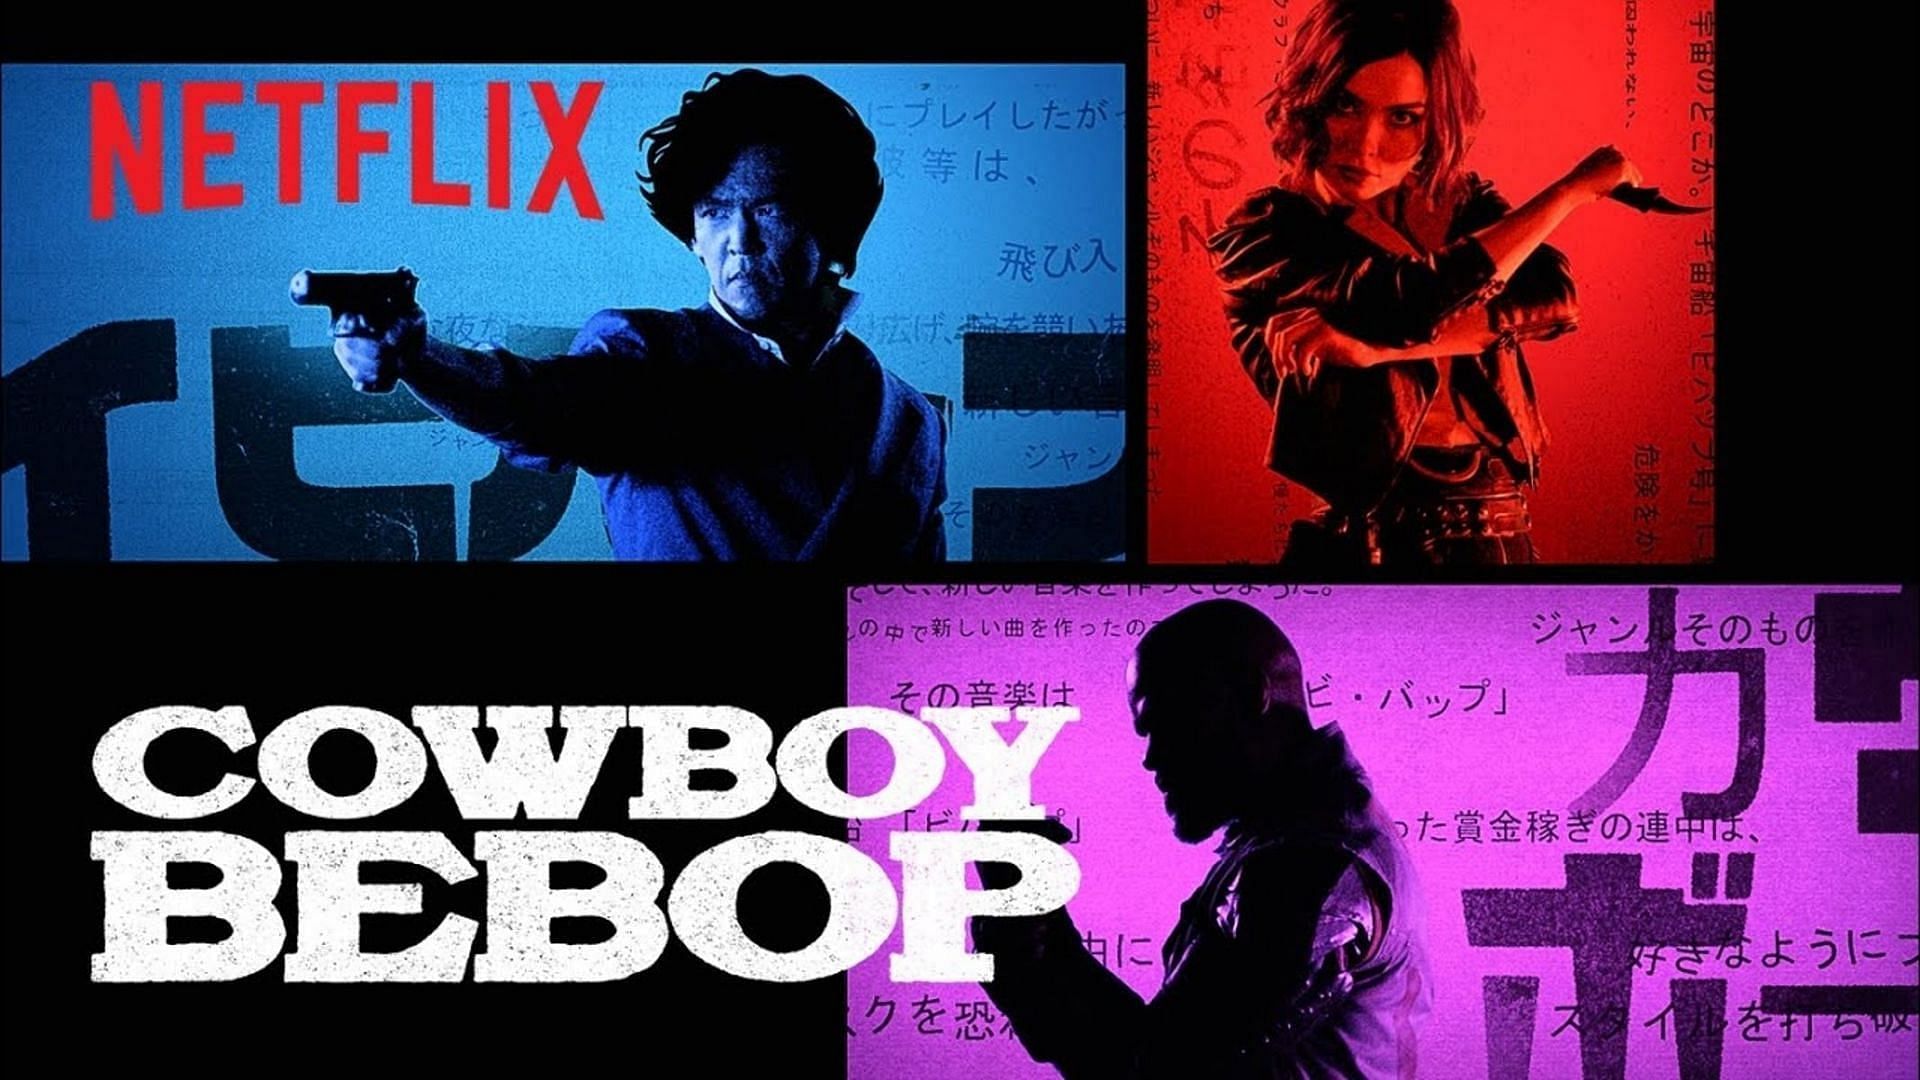 Cowboy Bebop (Image via Netflix)